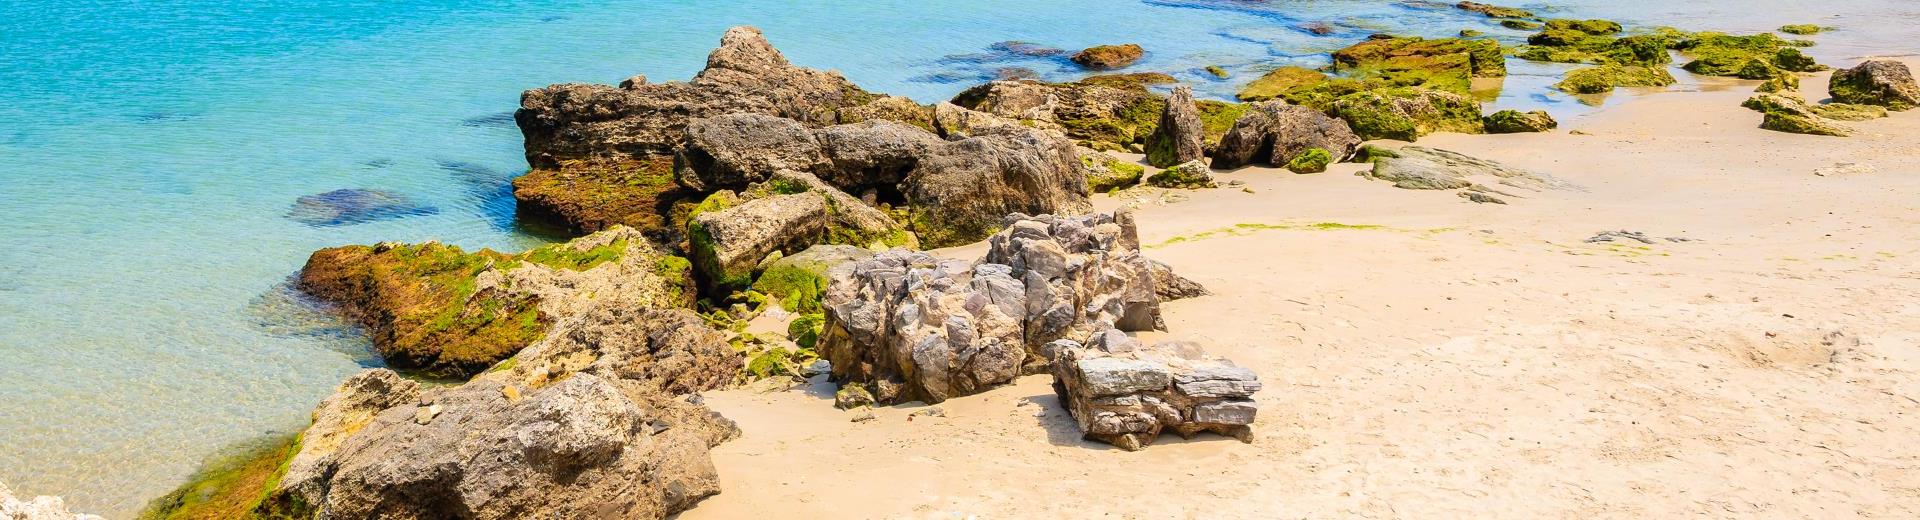 Case vacanze in Costa de la Luz: sulle spiagge dorate dell'Andalusia - Casamundo